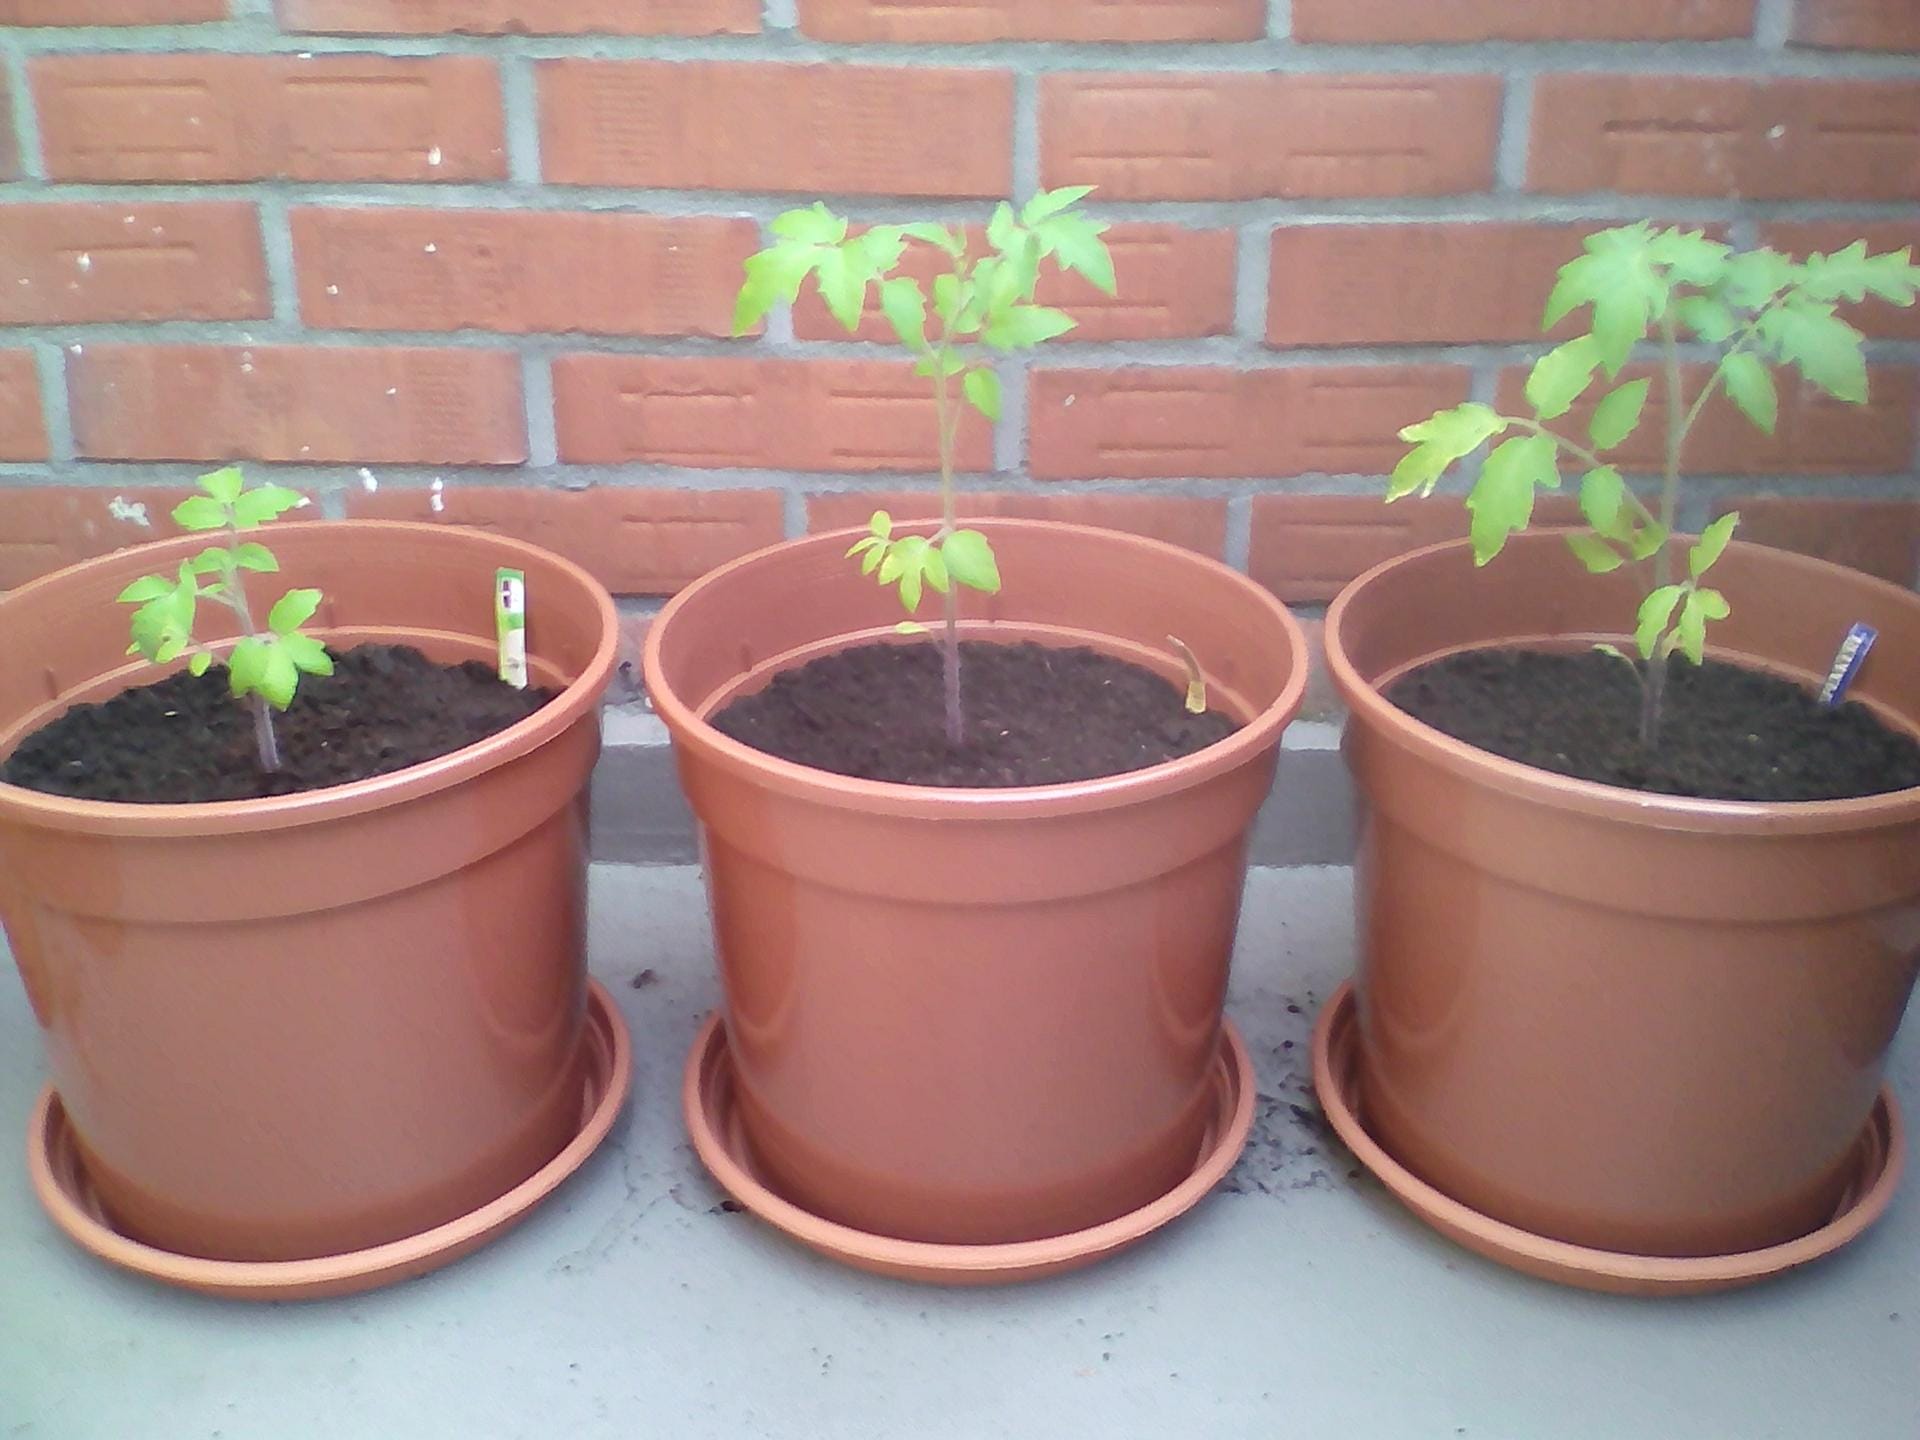 Tomaten in Kübeln: Lidl Tomate (links), Sperli Bio-Tomate (mittig) und Kiepenkerl Tomate (rechts) im 12,5-Liter-Anzuchttopf.